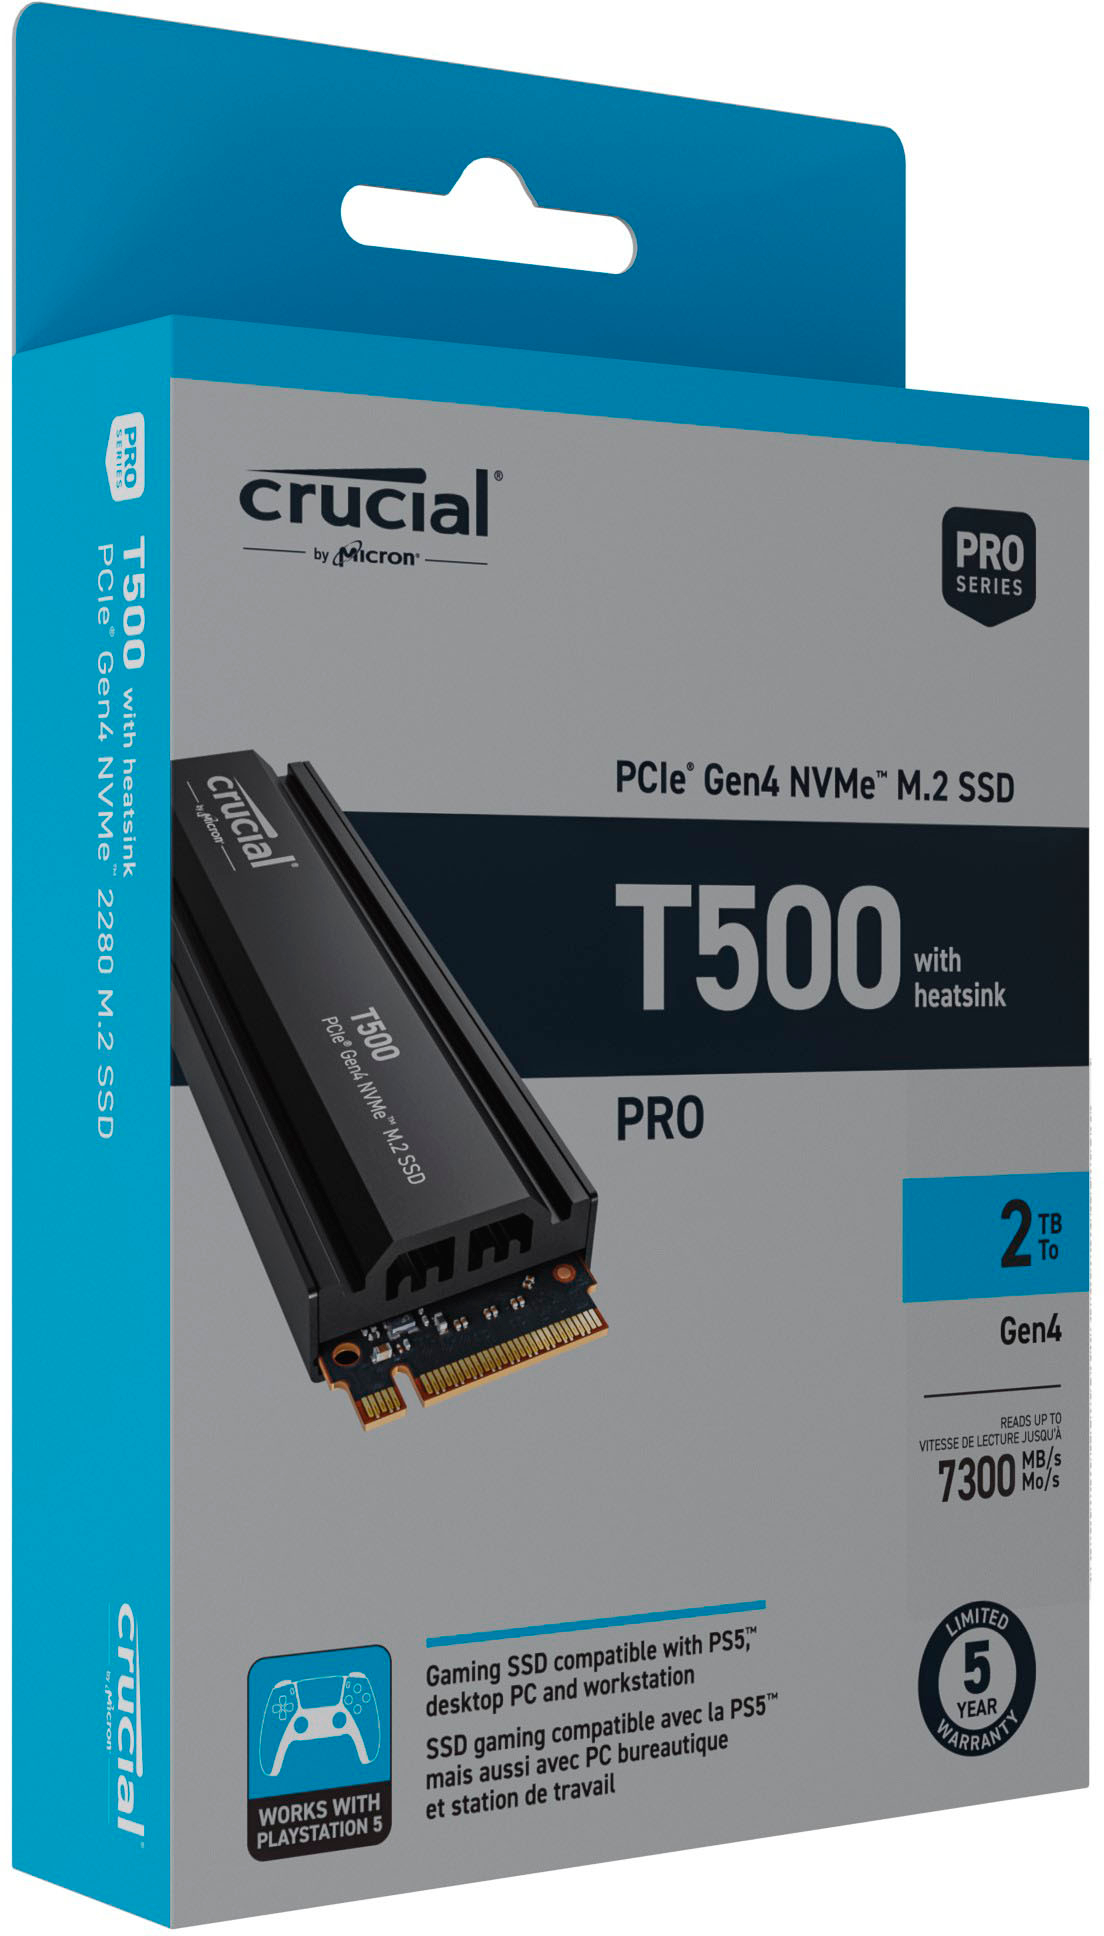 Crucial P5 Plus 1TB Internal SSD Pcle Gen 4 x4 NVMe  - Best Buy